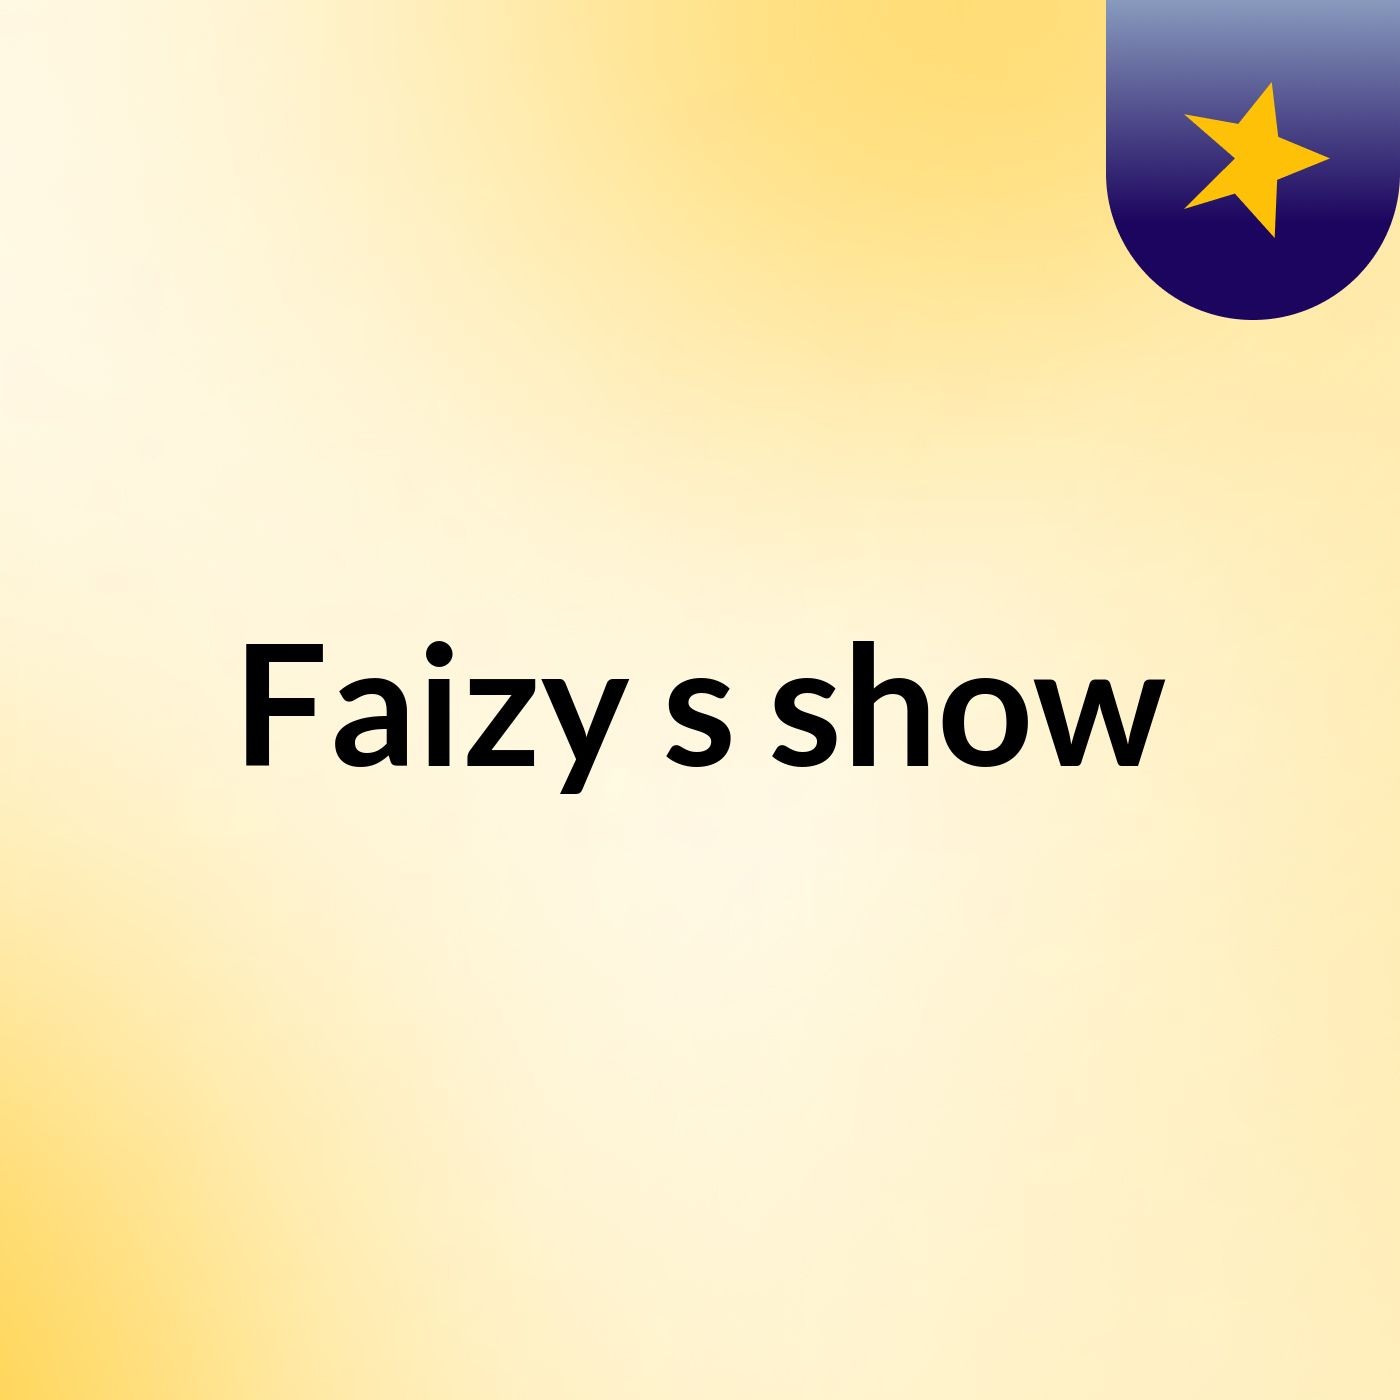 Faizy's show